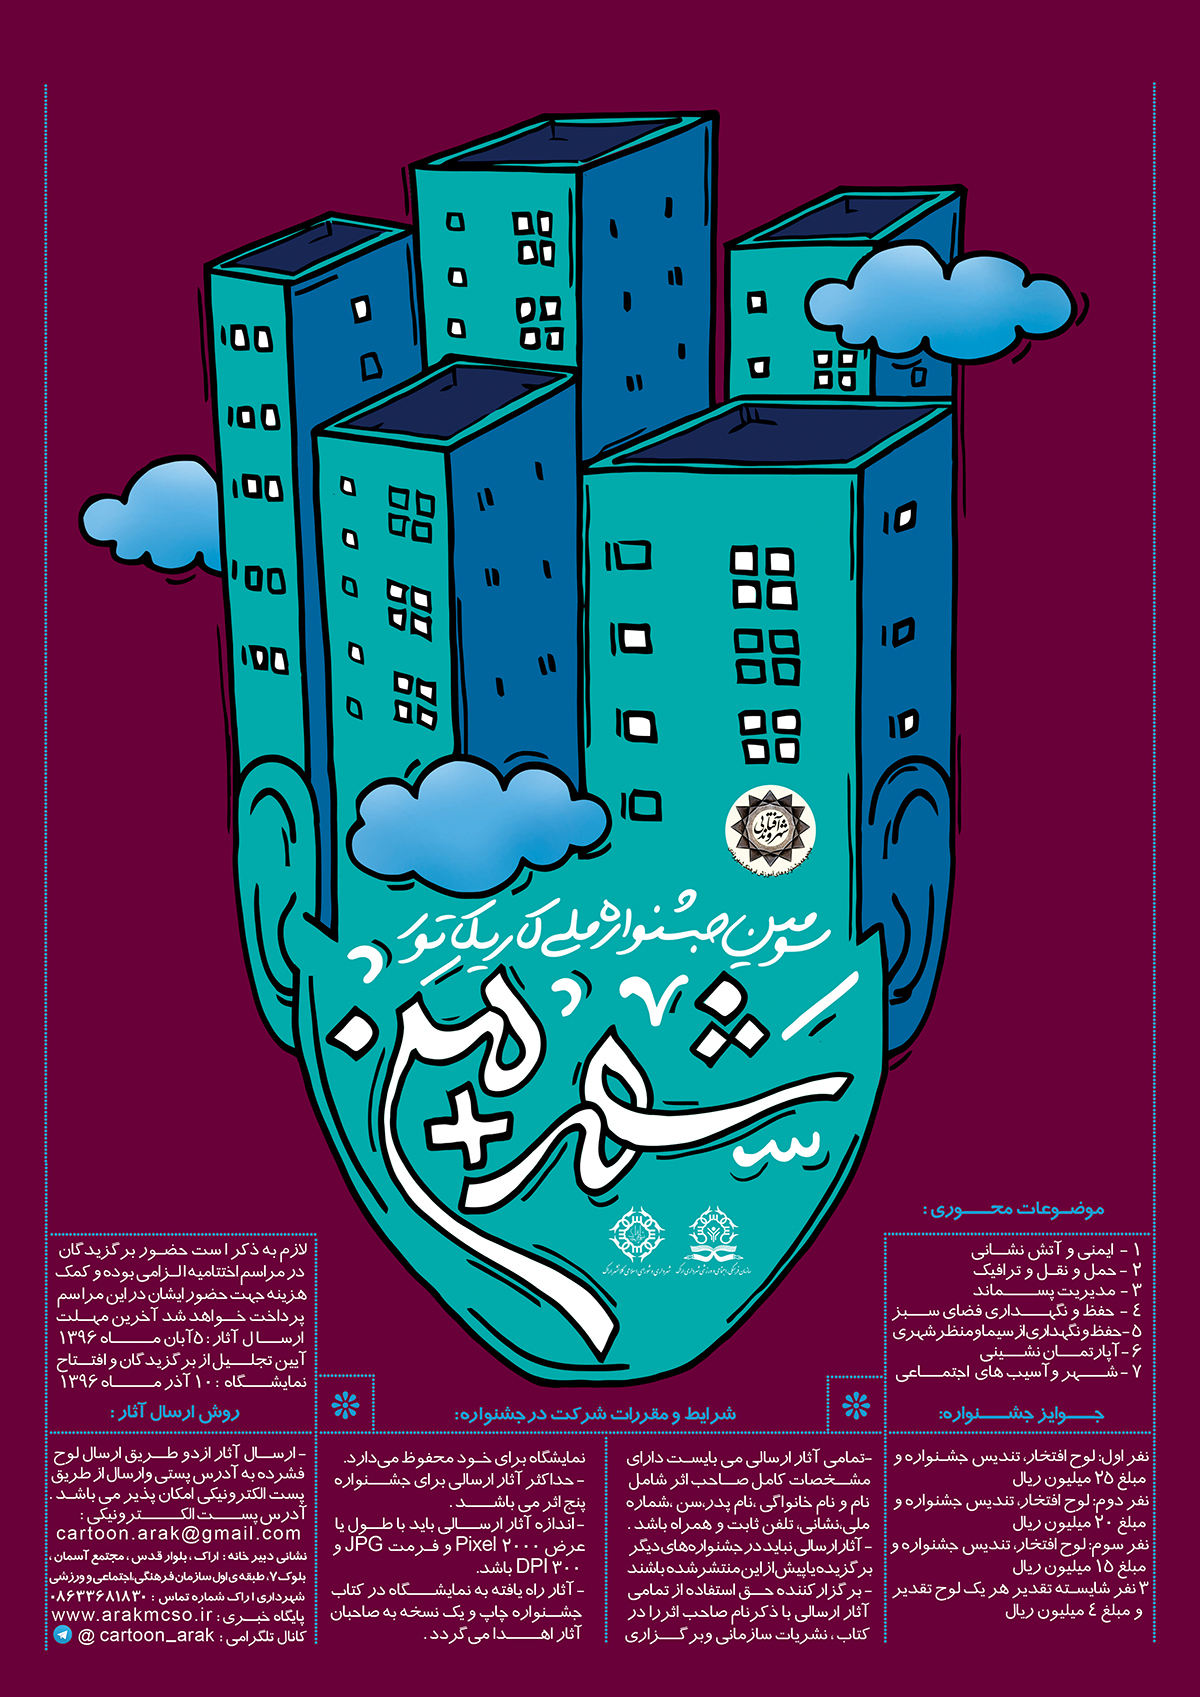 فراخوان سومین جشنواره ملی کاریکاتور با عنوان شهر + من